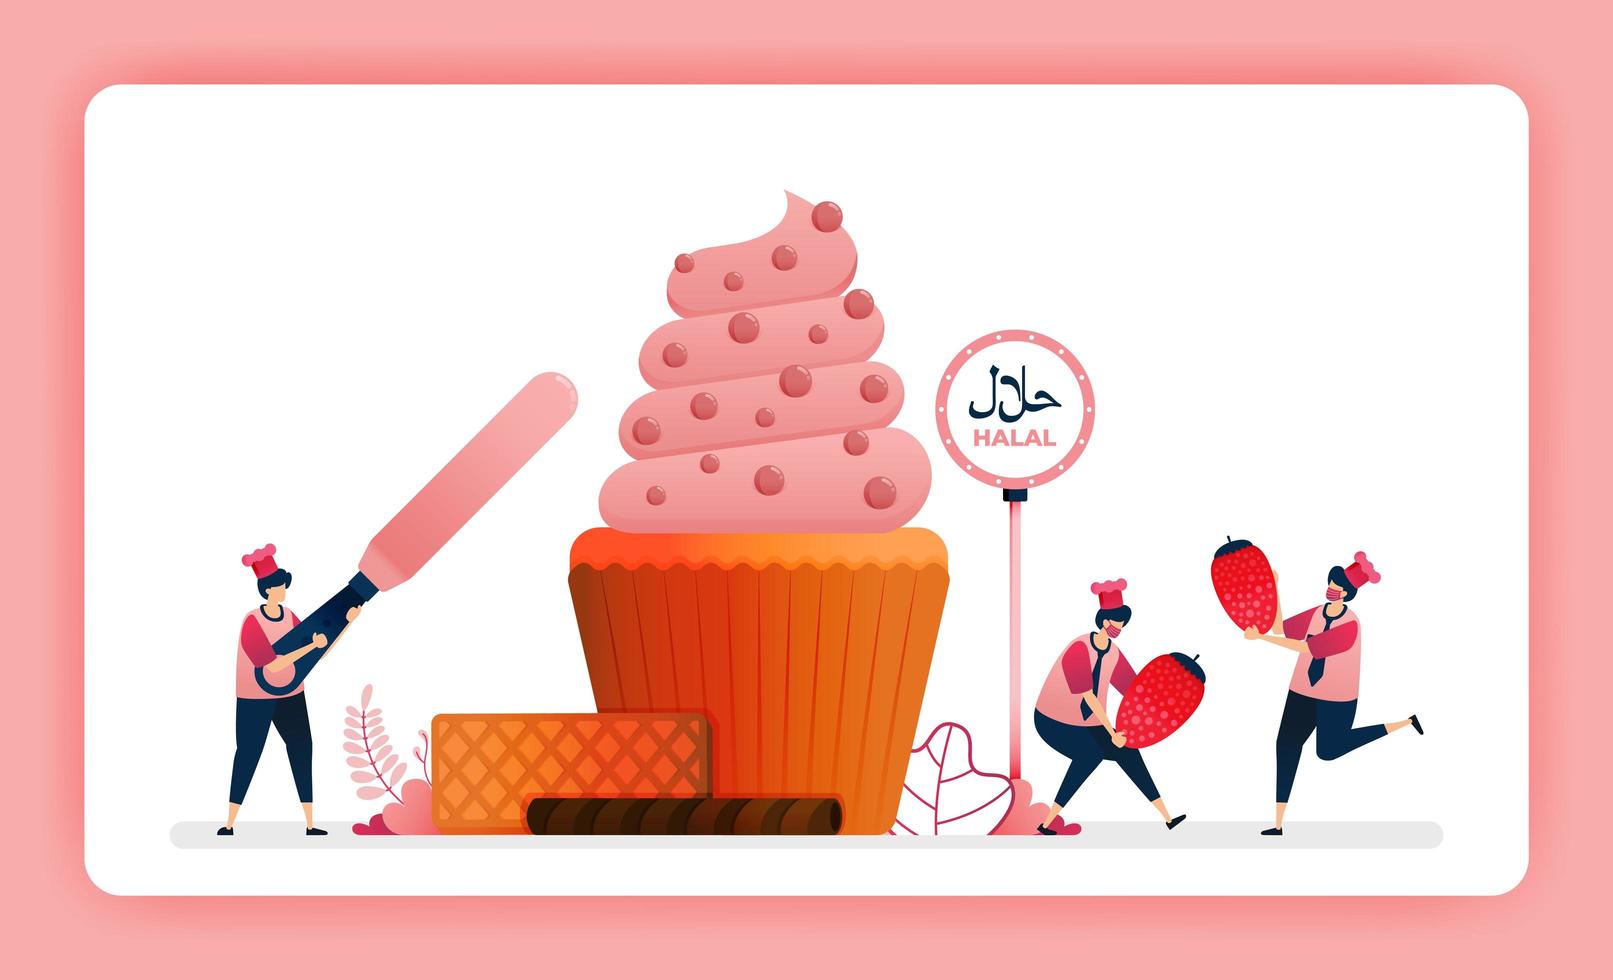 halal mat meny illustration av söta jordgubbar cupcake. gör muffins dekorerade med virvelisning och kakao. design kan användas för webbplats, webb, målsida, banner, mobilappar, ui ux, affisch, flygblad vektor